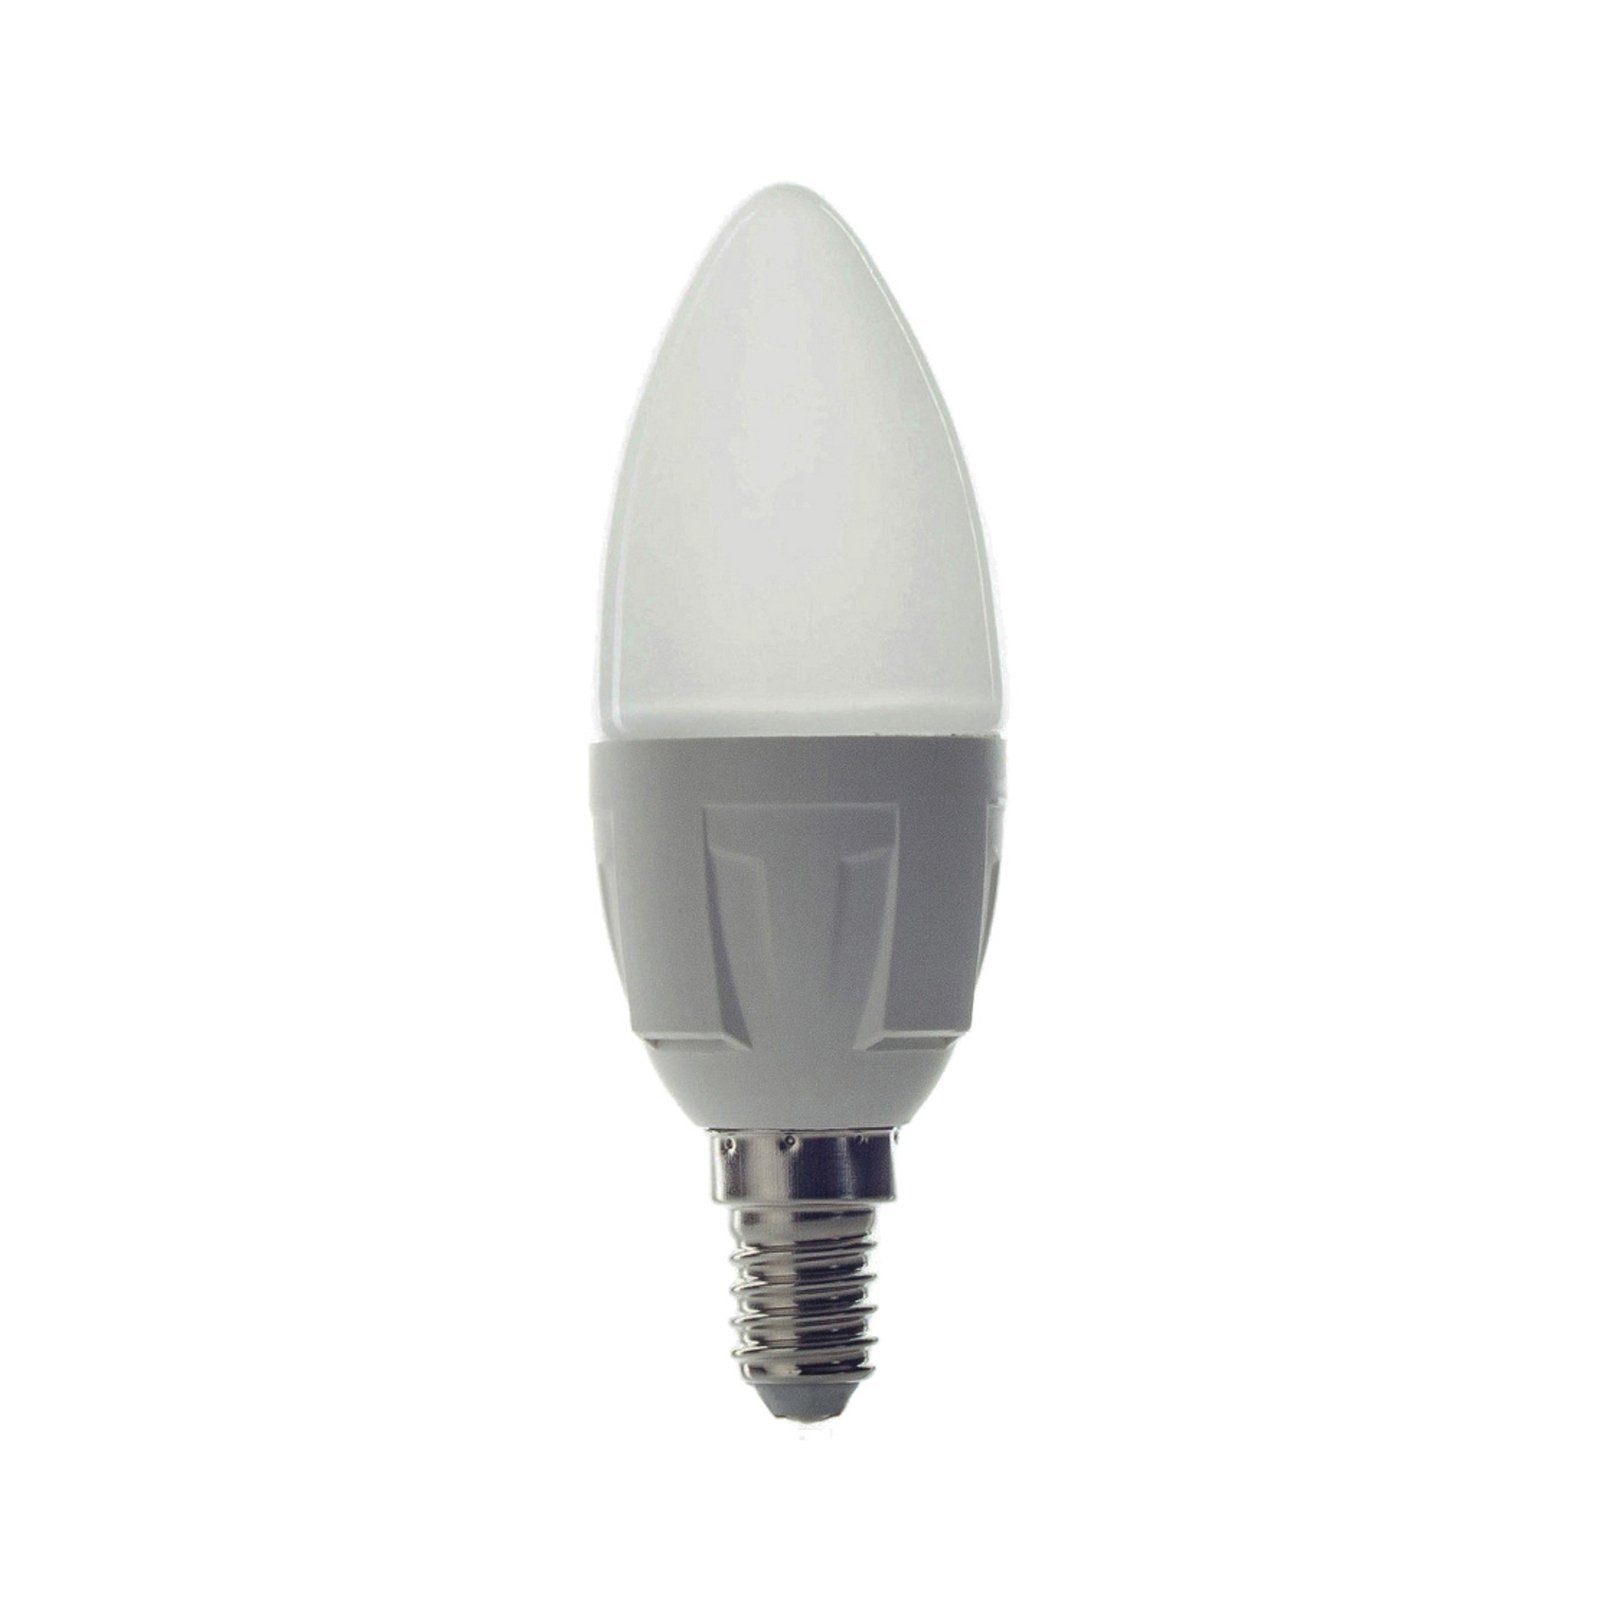 Ampoule bougie LED E14 4,9 W 830 470 lm, x3